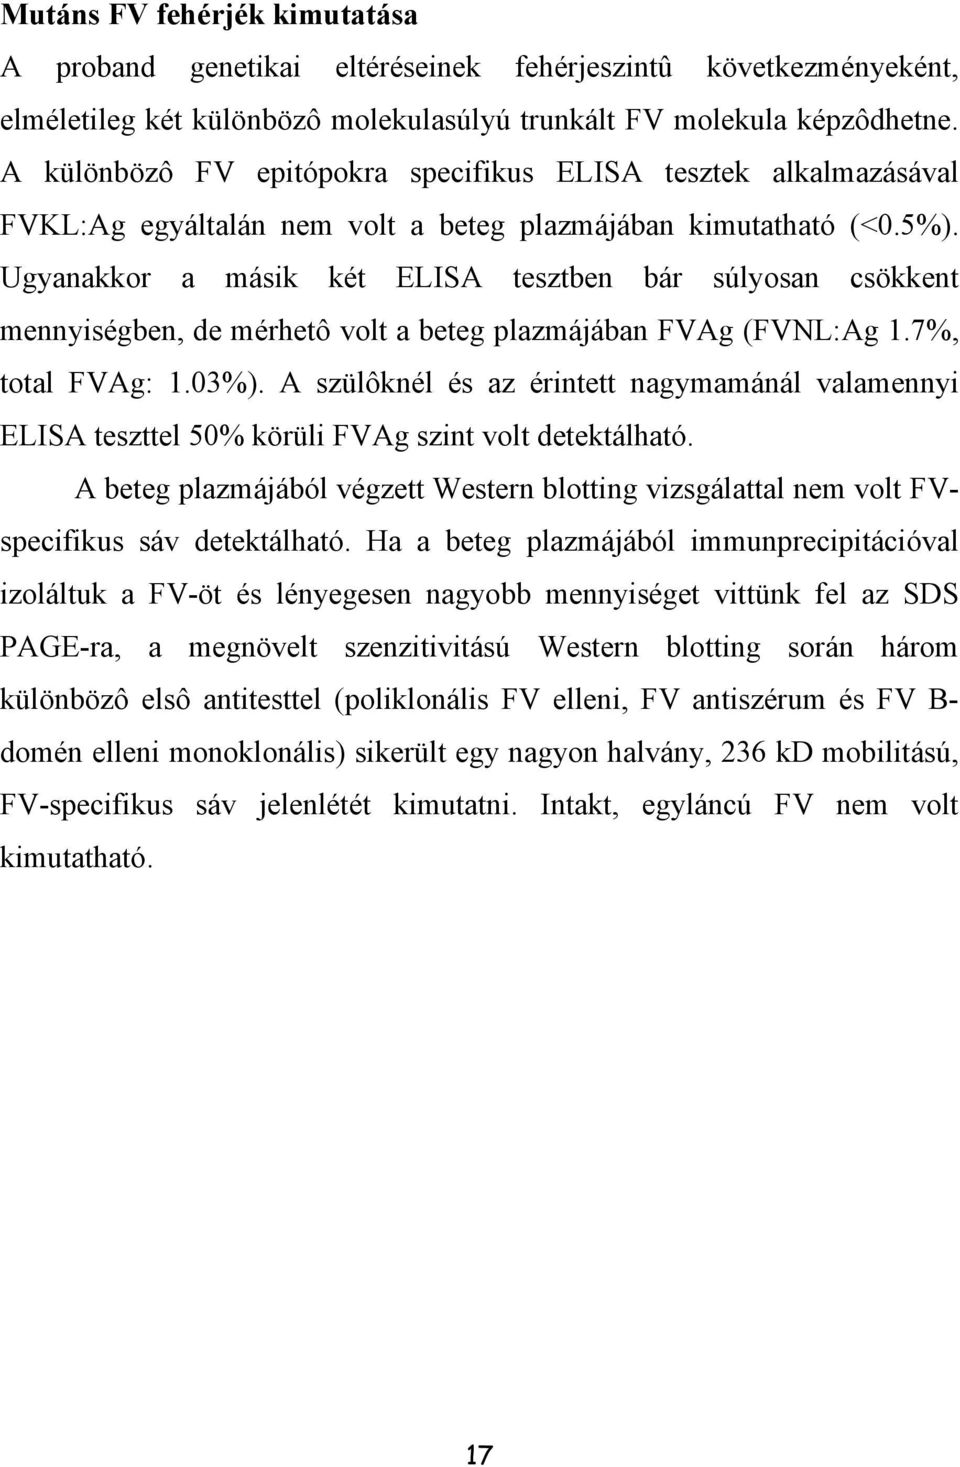 Ugyanakkor a másik két ELISA tesztben bár súlyosan csökkent mennyiségben, de mérhetô volt a beteg plazmájában FVAg (FVNL:Ag 1.7%, total FVAg: 1.03%).